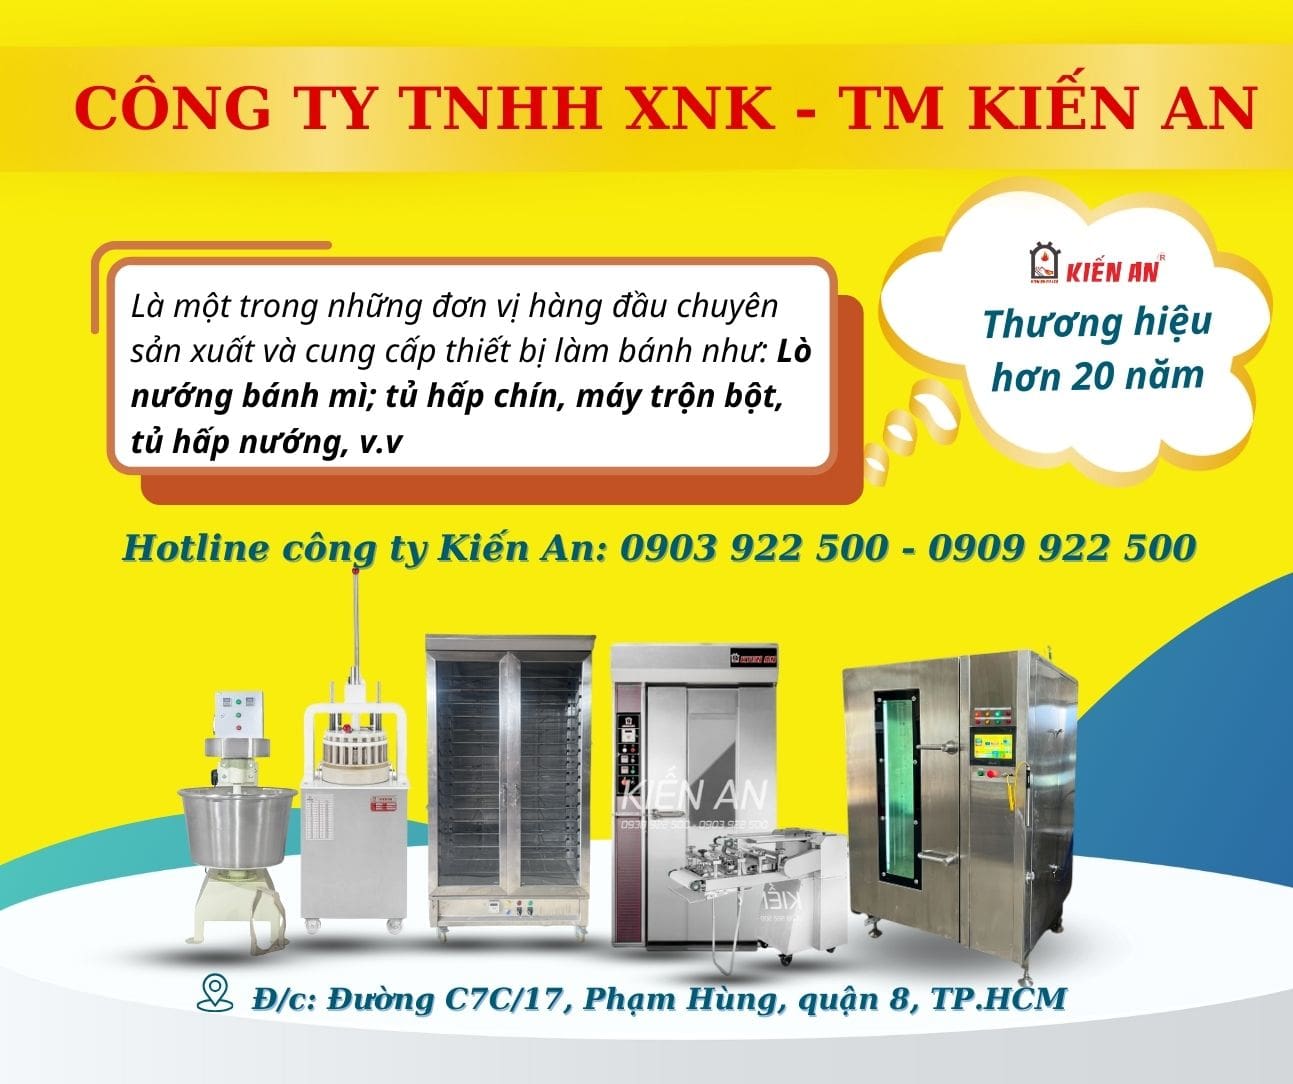 Kiến An - Địa chỉ sản xuất tủ hấp nướng đa năng thông minh tại Việt Nam